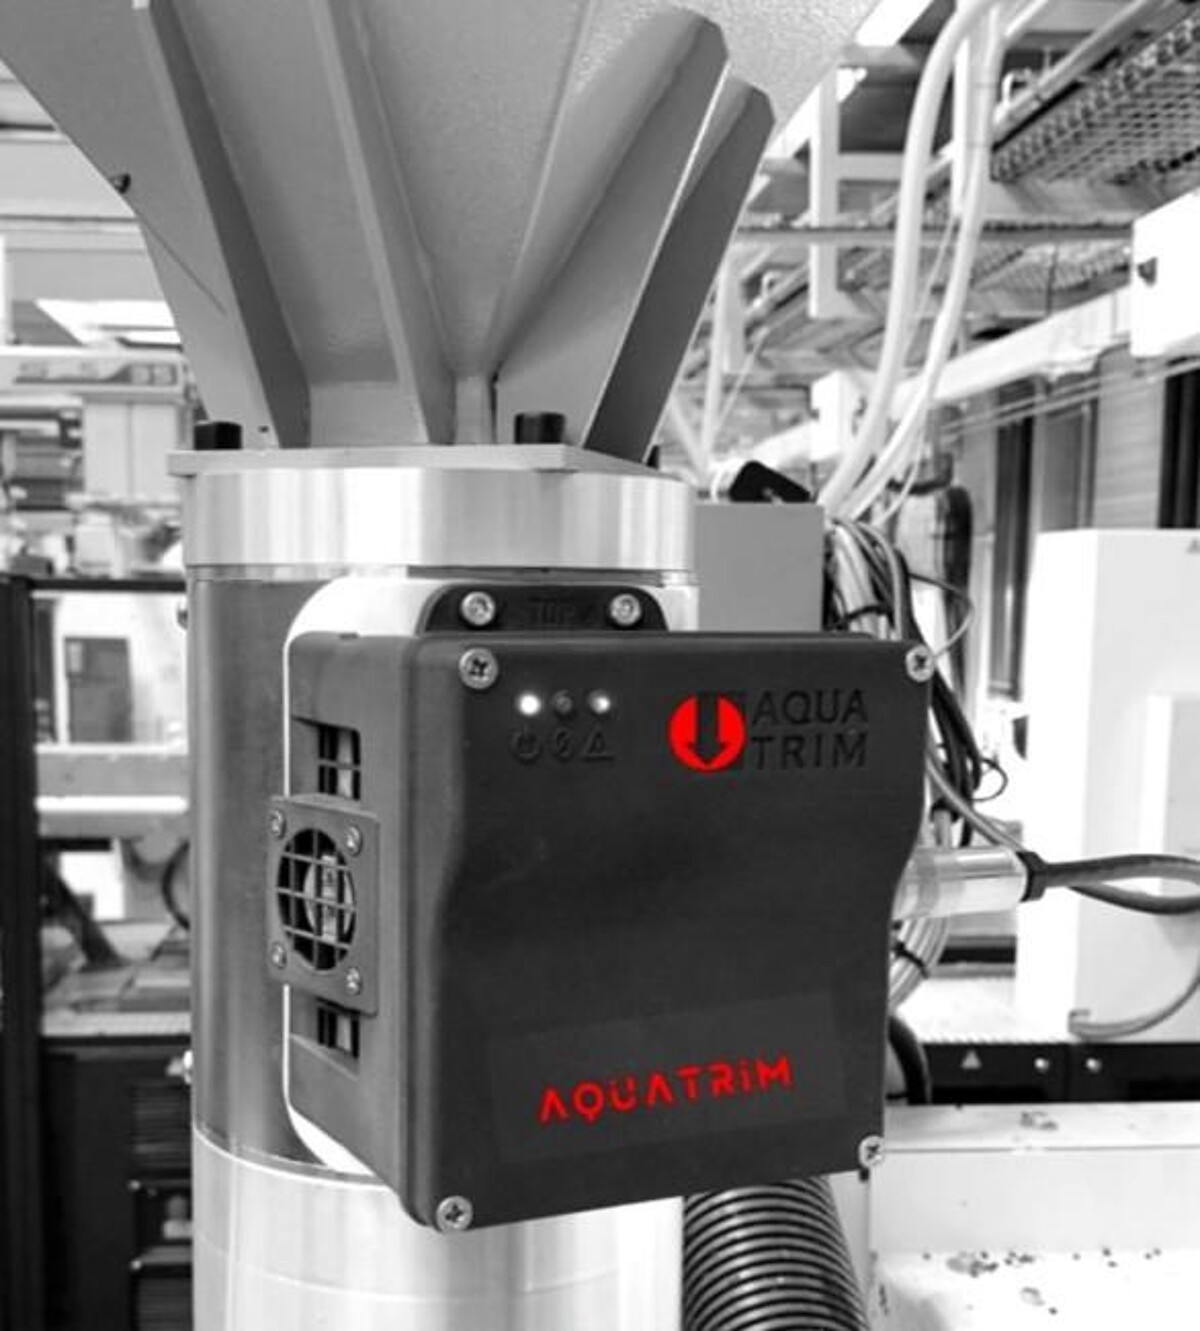 Der Aquatrim-Sensor kann direkt auf dem Maschineneinzug installiert werden. (Foto: Eprom)